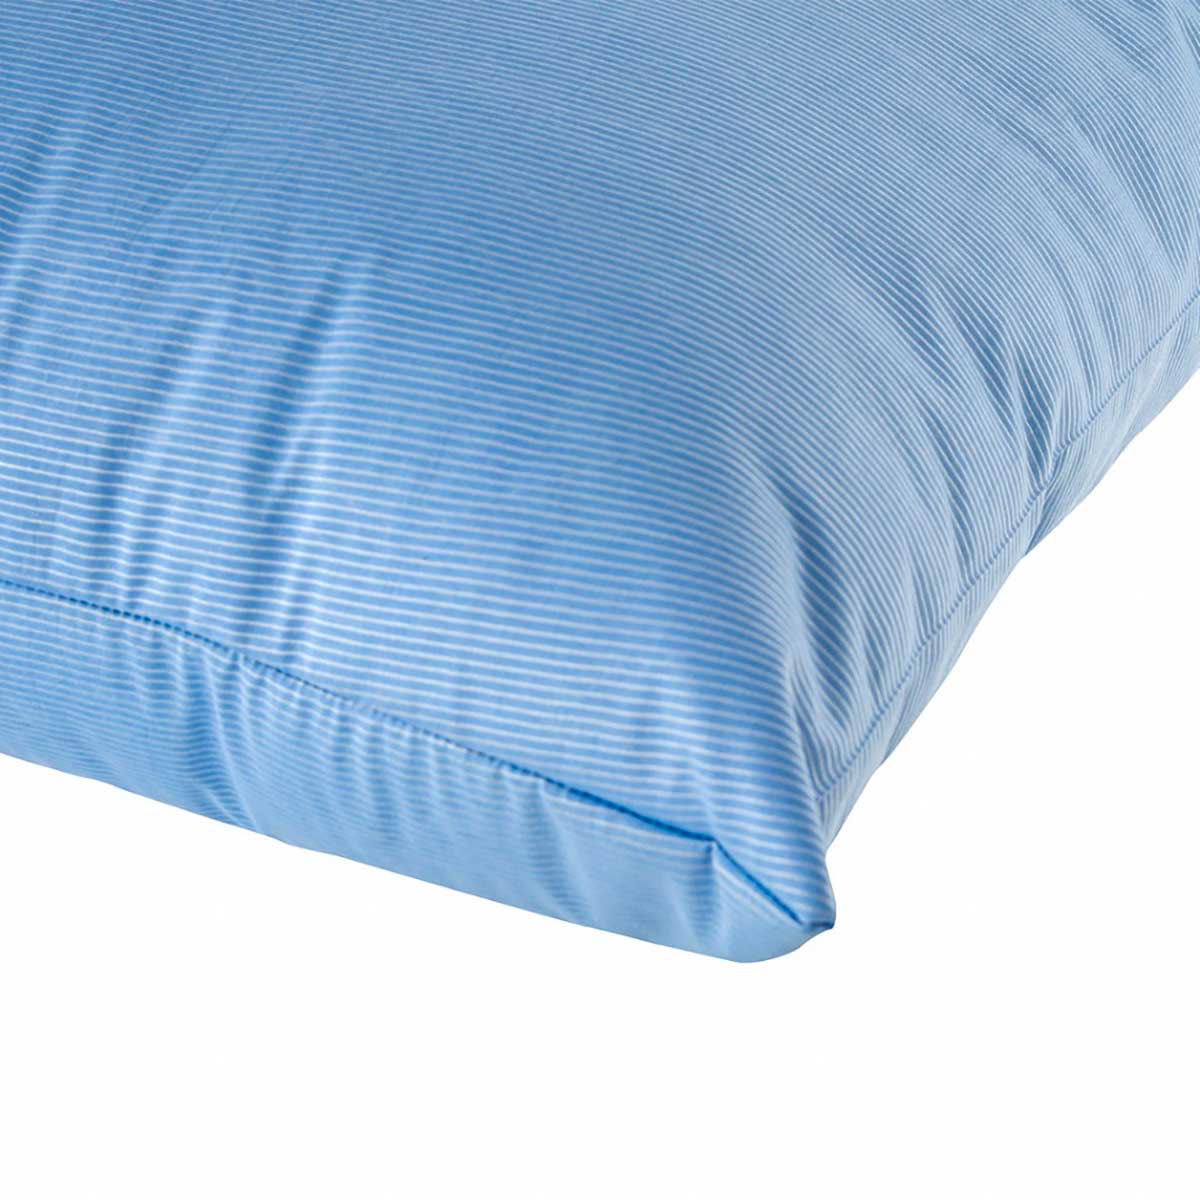 travesseiro-frio-em-fibra-de-poliester-siliconizada-50x70cm-fibrasca-frostygel-4345-azul-1-peca-4.jpg